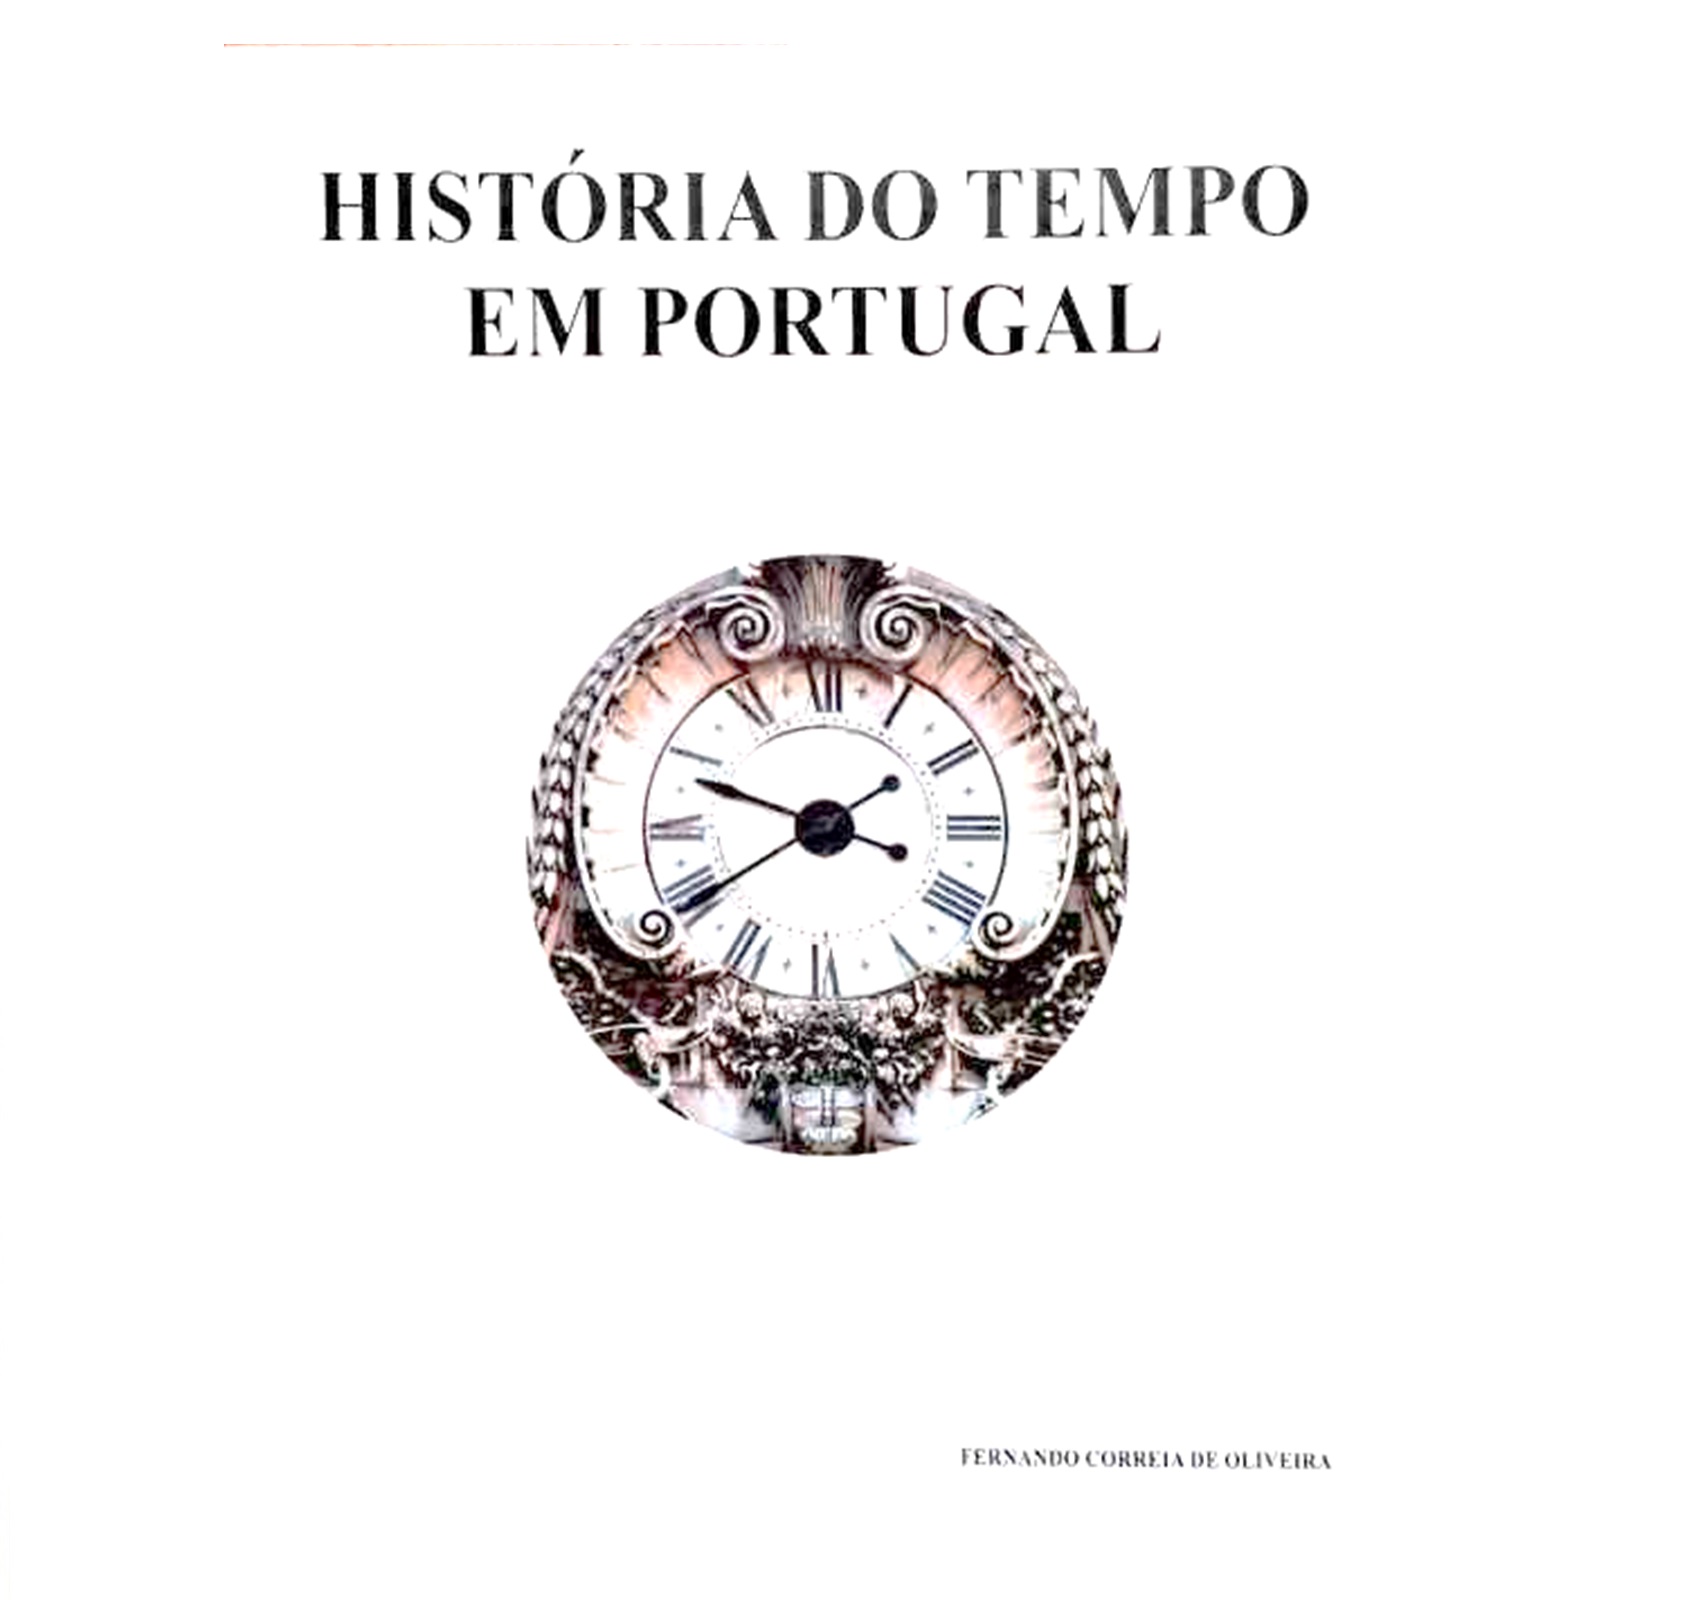 HISTÓRIA DO TEMPO, DA RELOJOARIA EM PORTUGAL